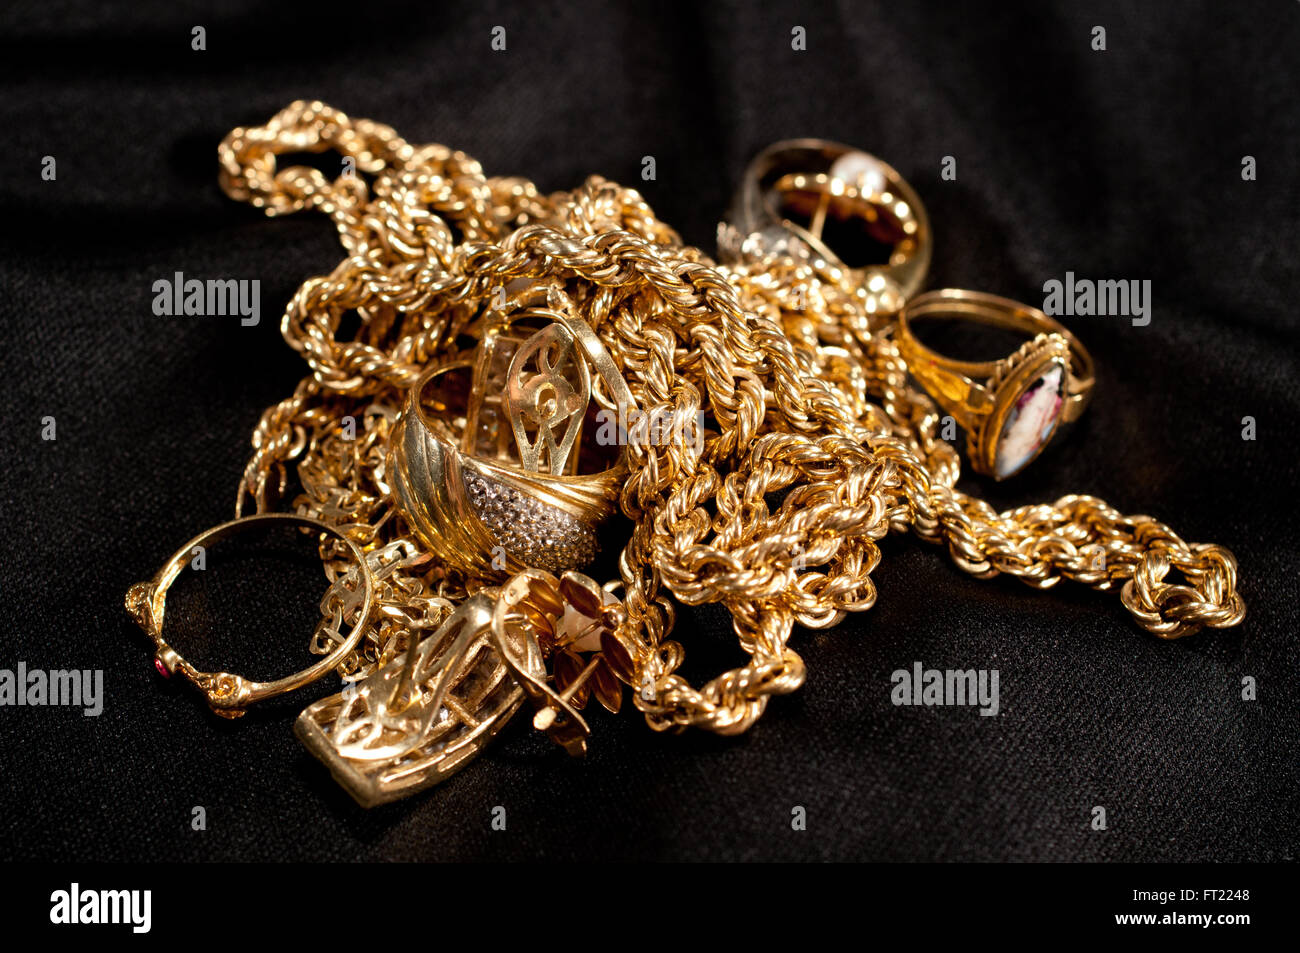 Chatarra de joyas de oro incluyendo cadenas, pulseras y en un fondo negro Fotografía de stock Alamy